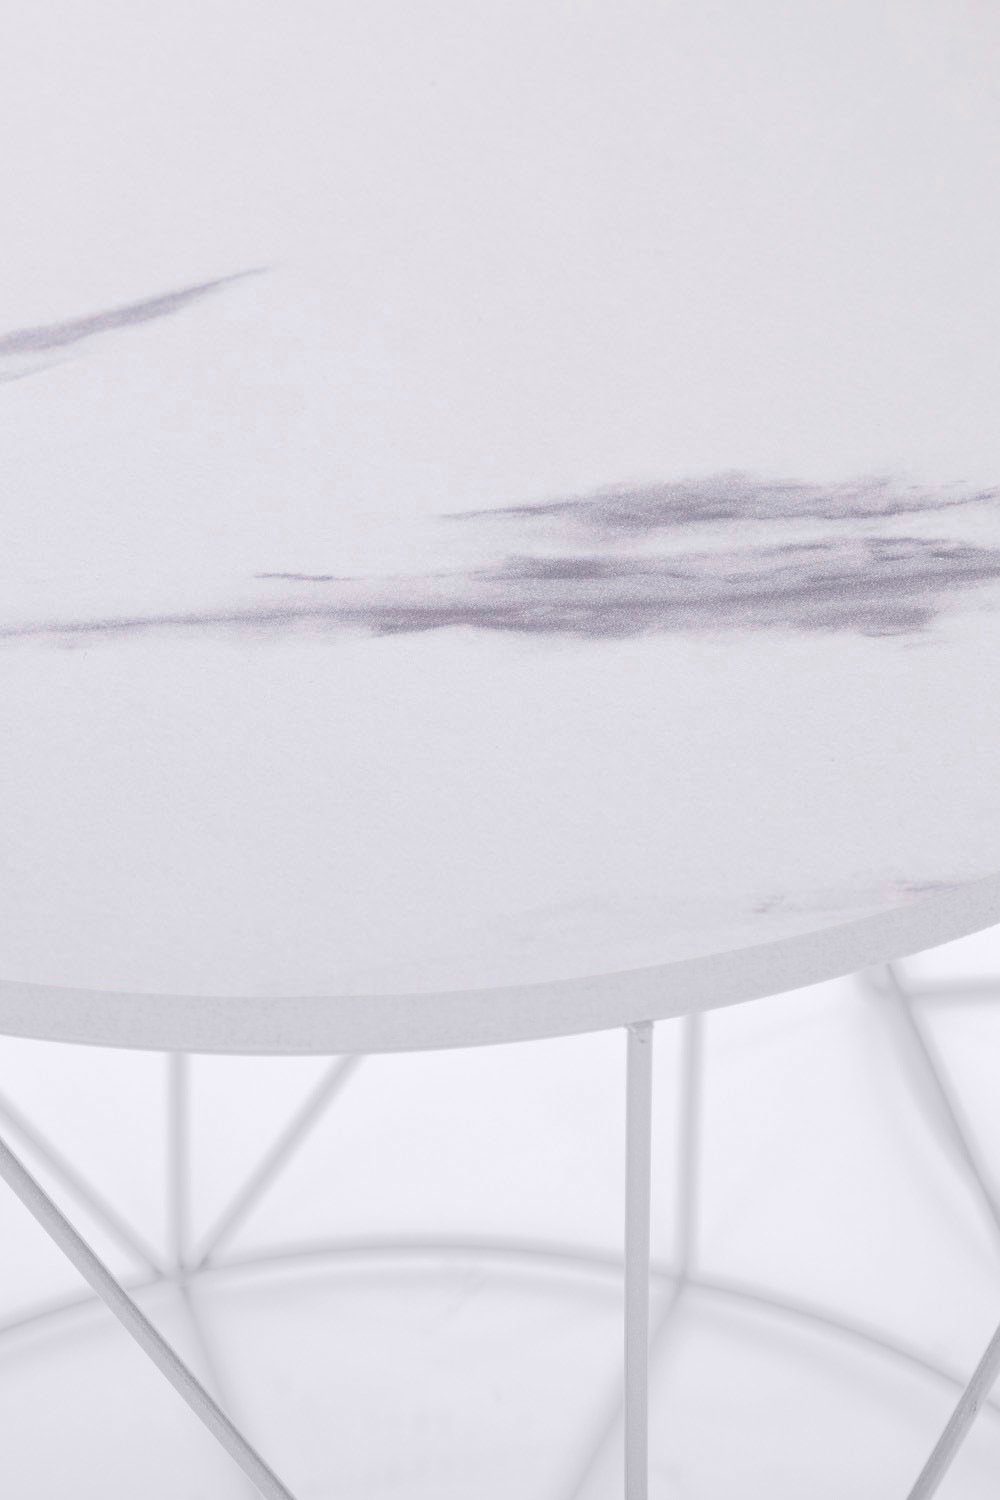 | | Platte Flair Rundini, Naturbelassene Weiß Weiß/Marmor Design my im lackiertem Skandinavischem Beistelltisch Design Weiß Gestell,